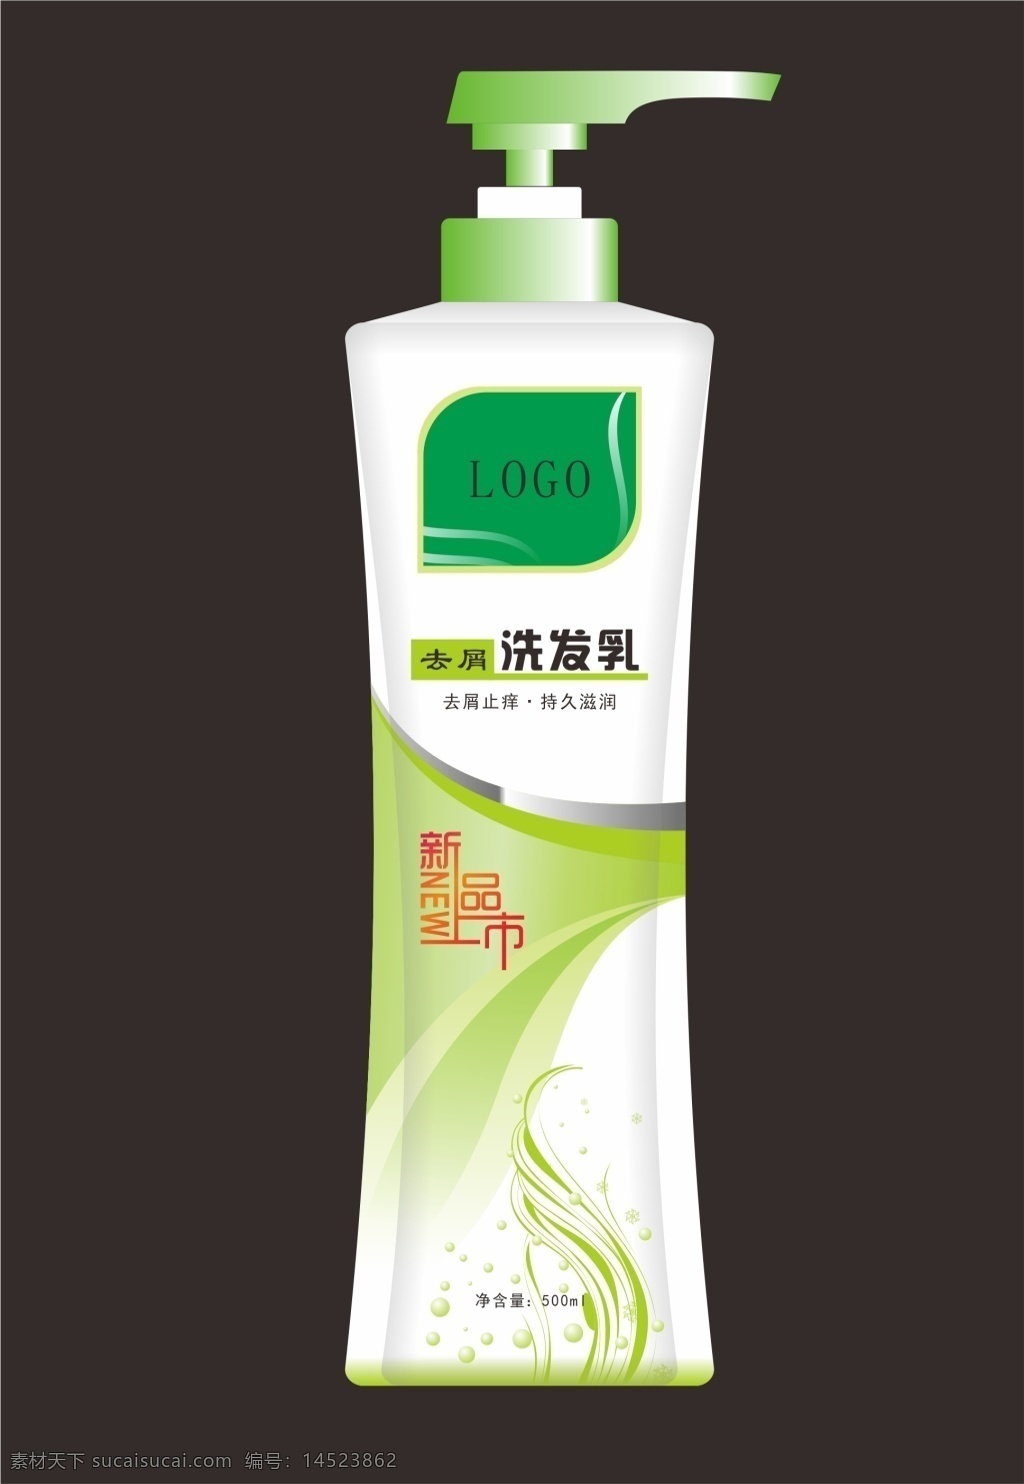 洗发乳包装 洗发水 洗发乳 洗发 护理 日常 头发 绿色 花纹 生活用品 沐浴 沐浴用品